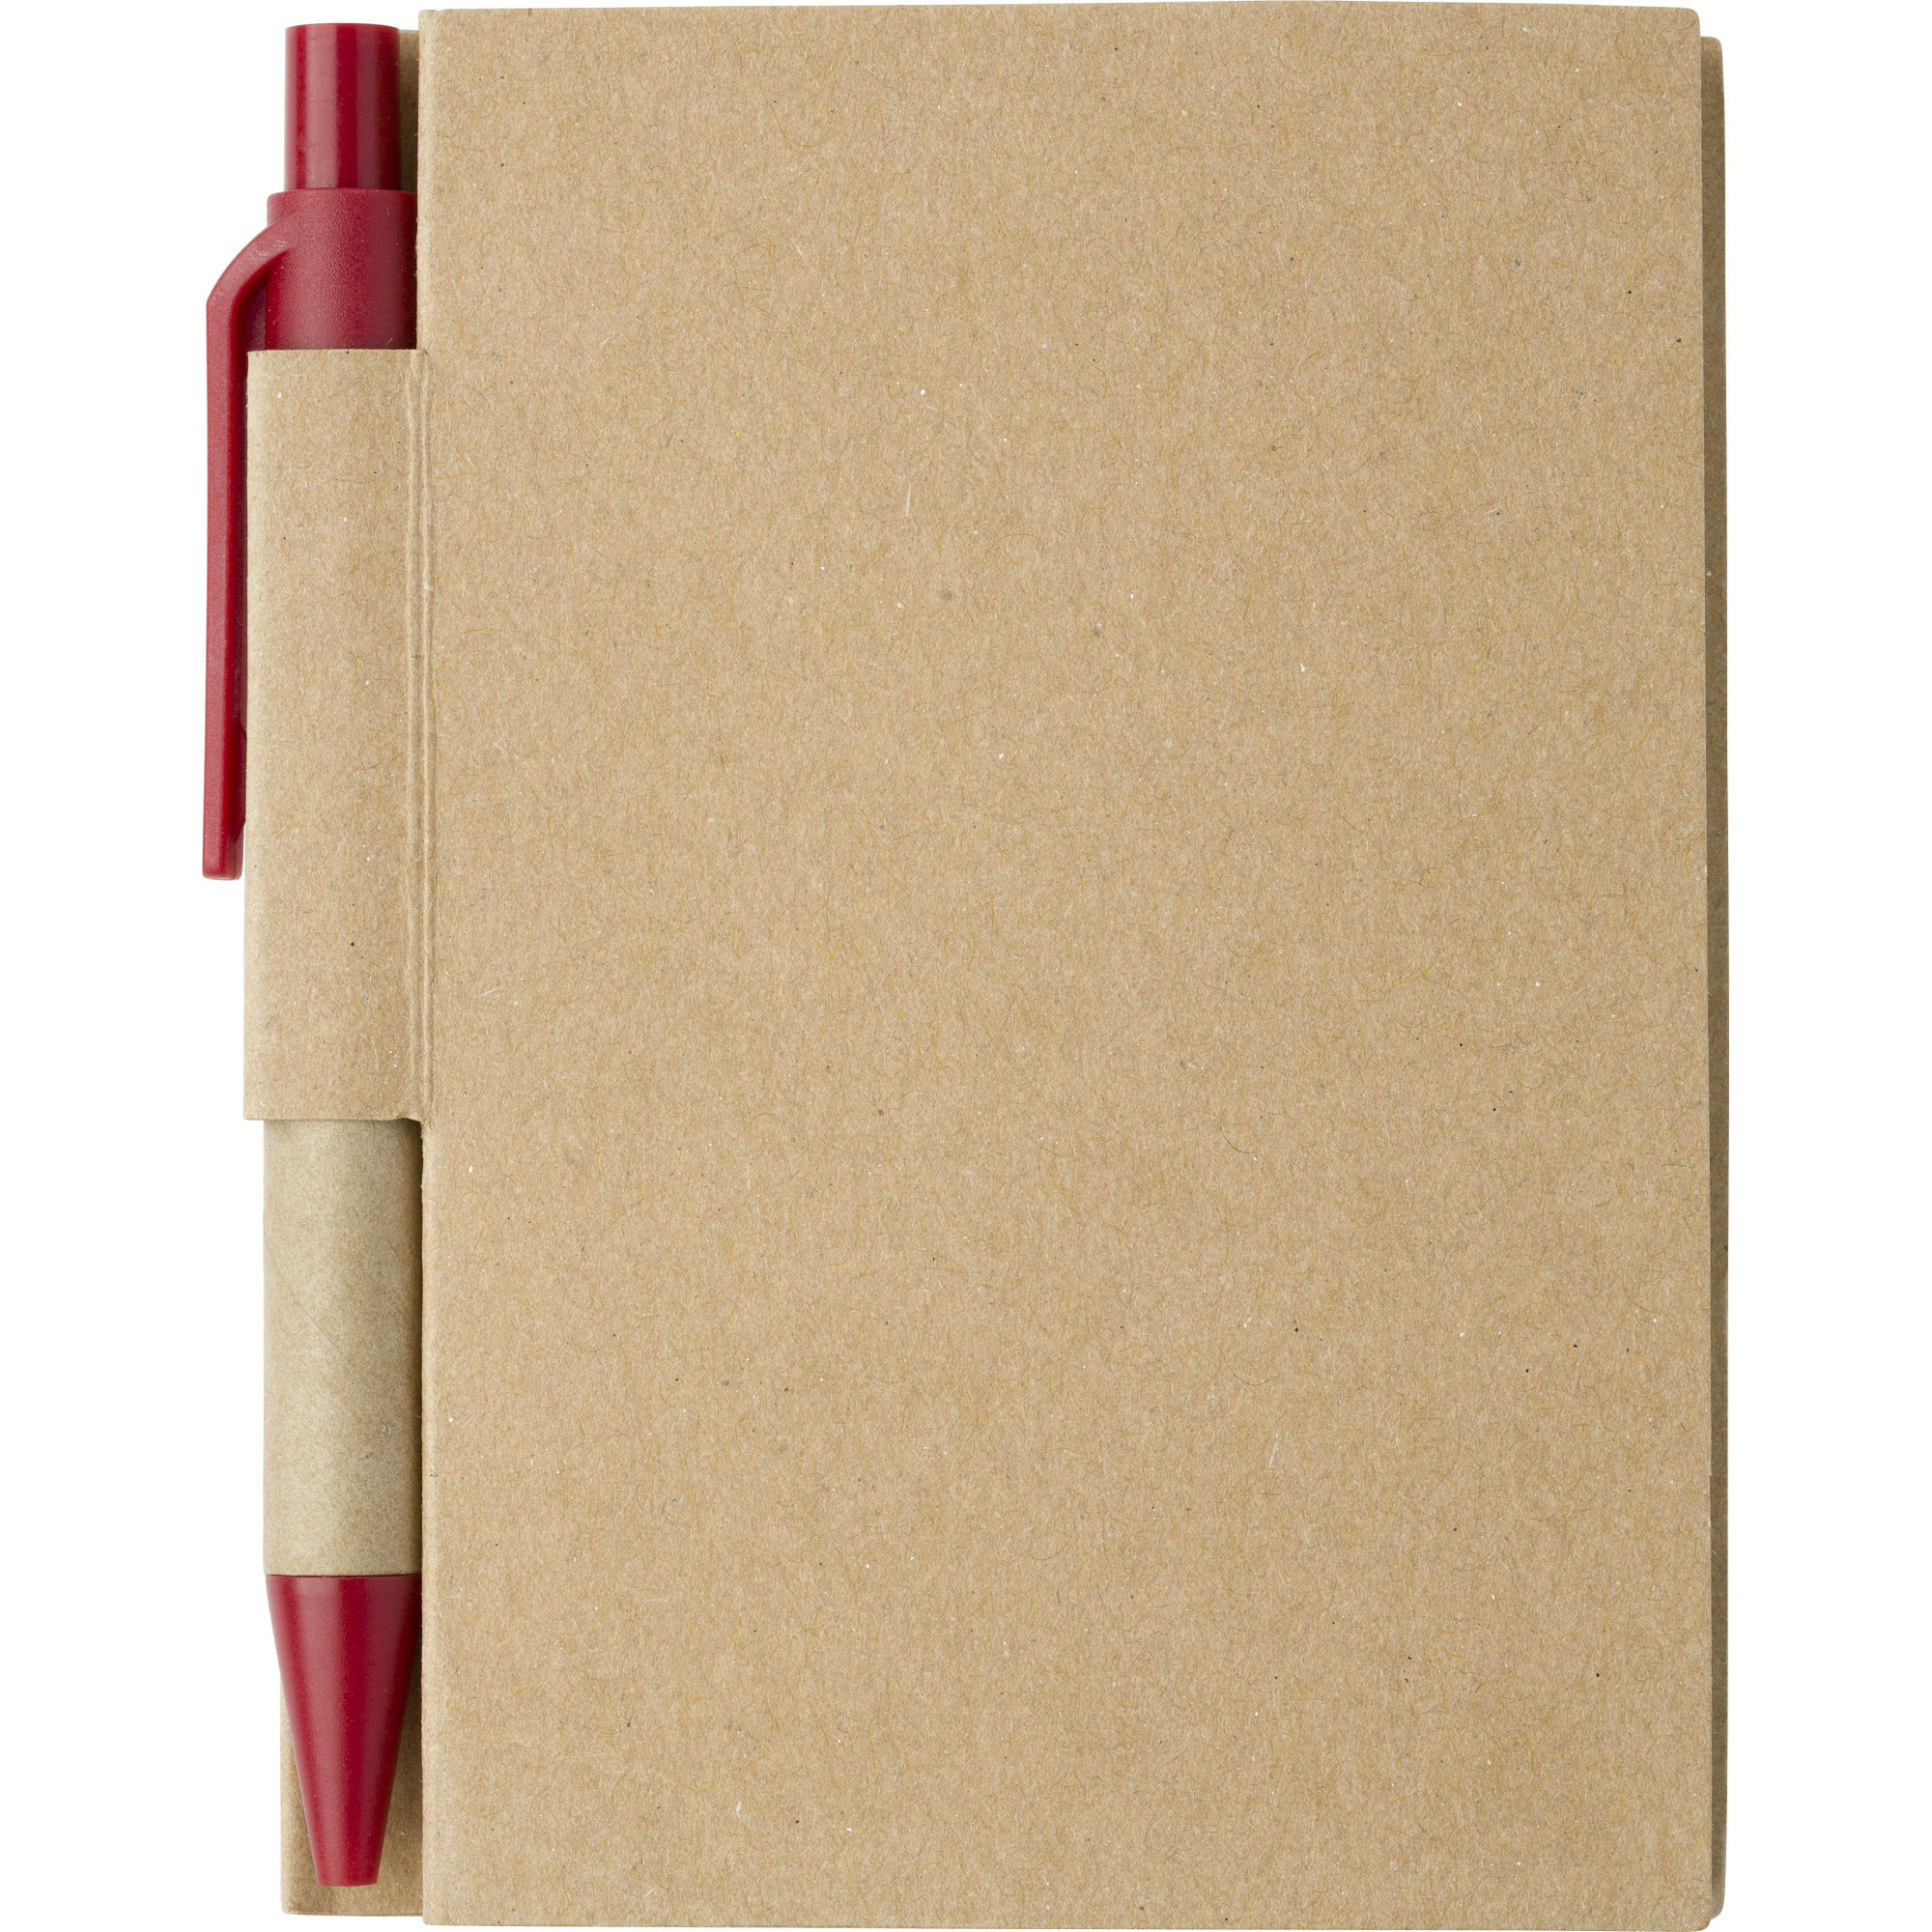 Notitie-opschrijf boekje met balpen harde kaft beige-rood 11x8cm 80blz gelinieerd